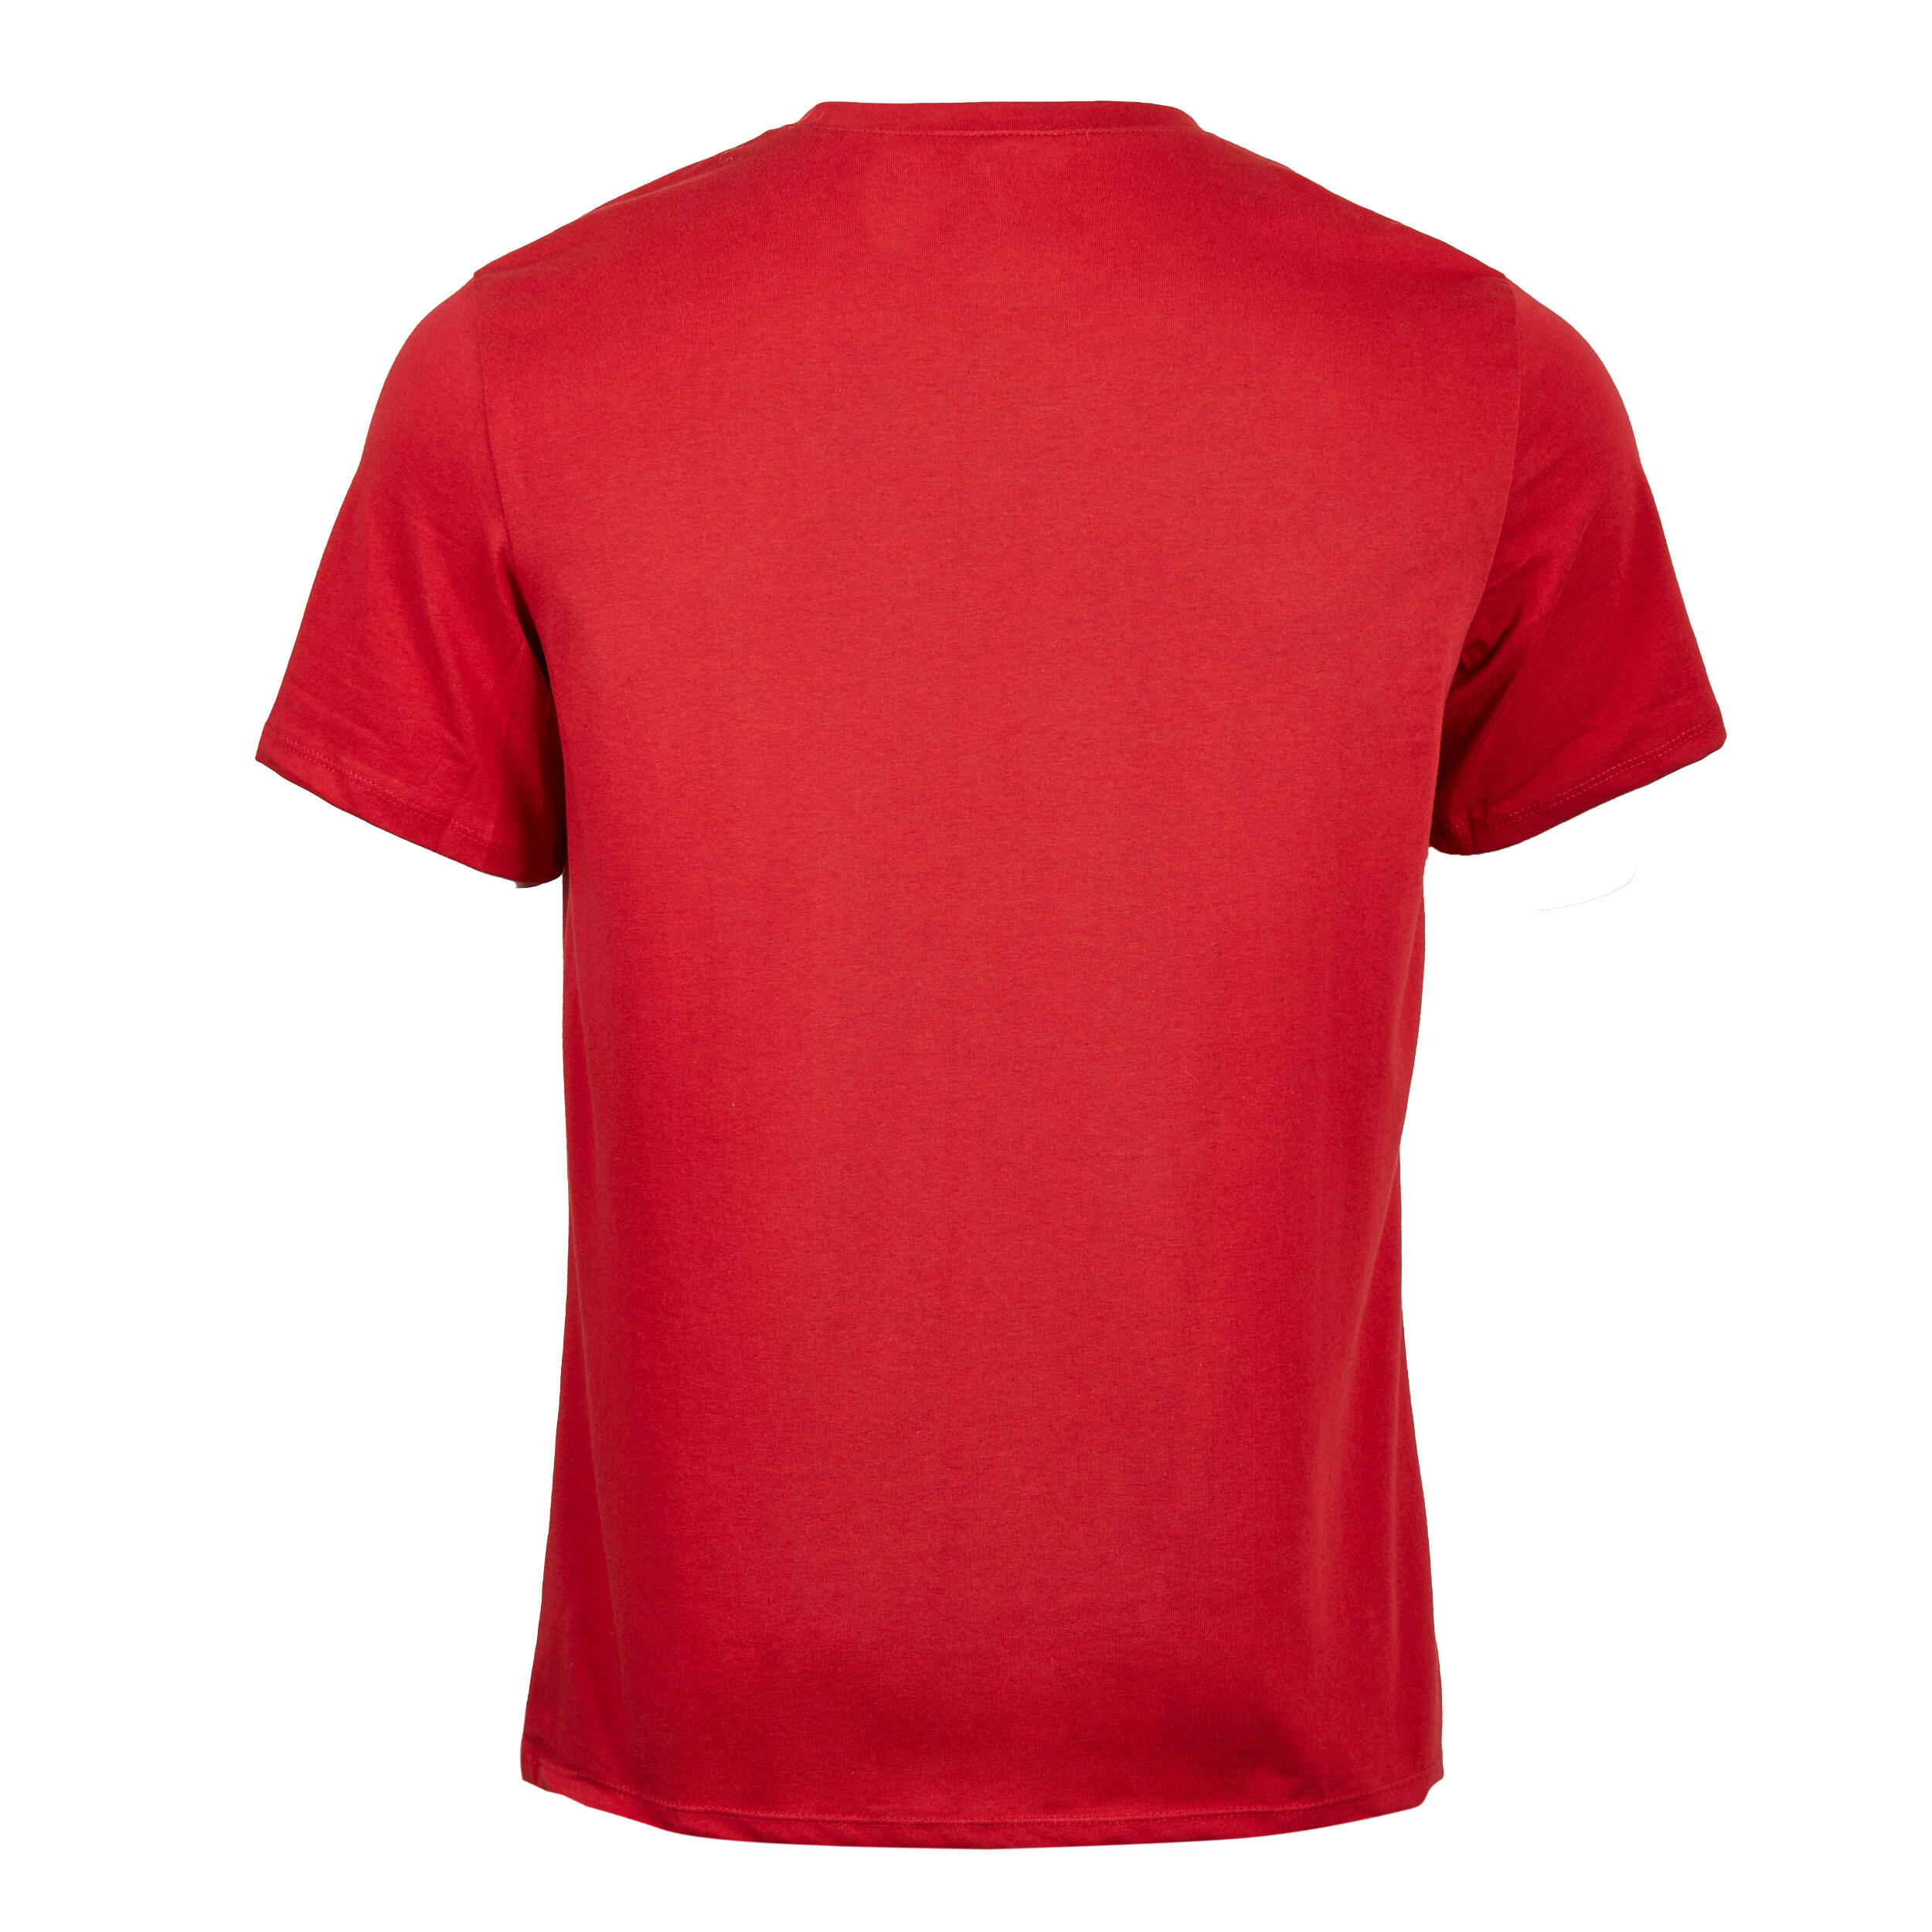 500 Gym Regular Short-Sleeved T-Shirt - Men - Garnet red - Domyos